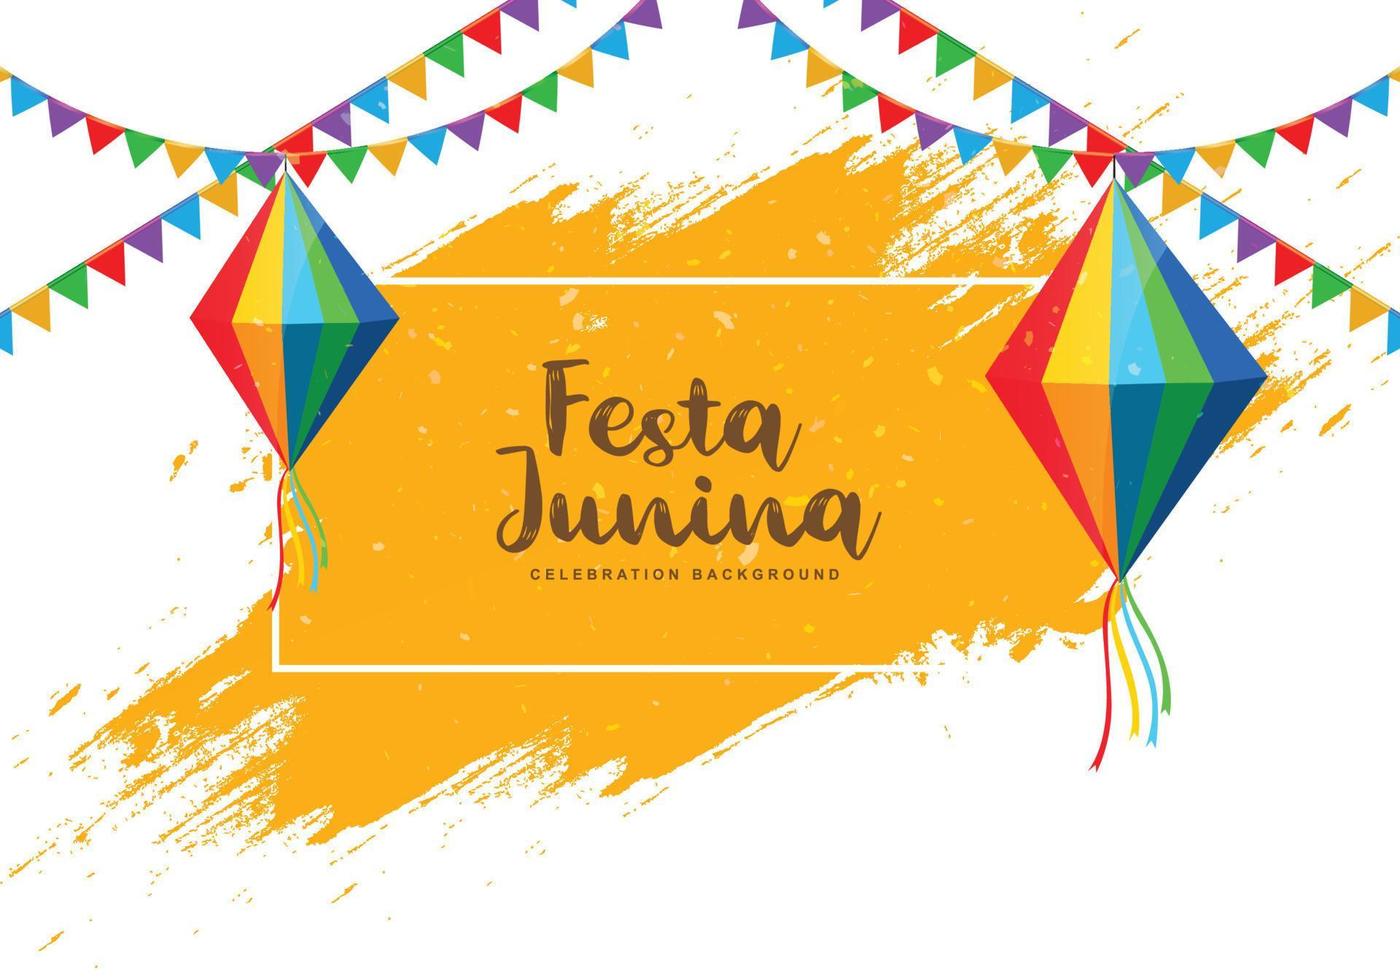 fond de carte de célébration d'événement brésilien festa junina vecteur